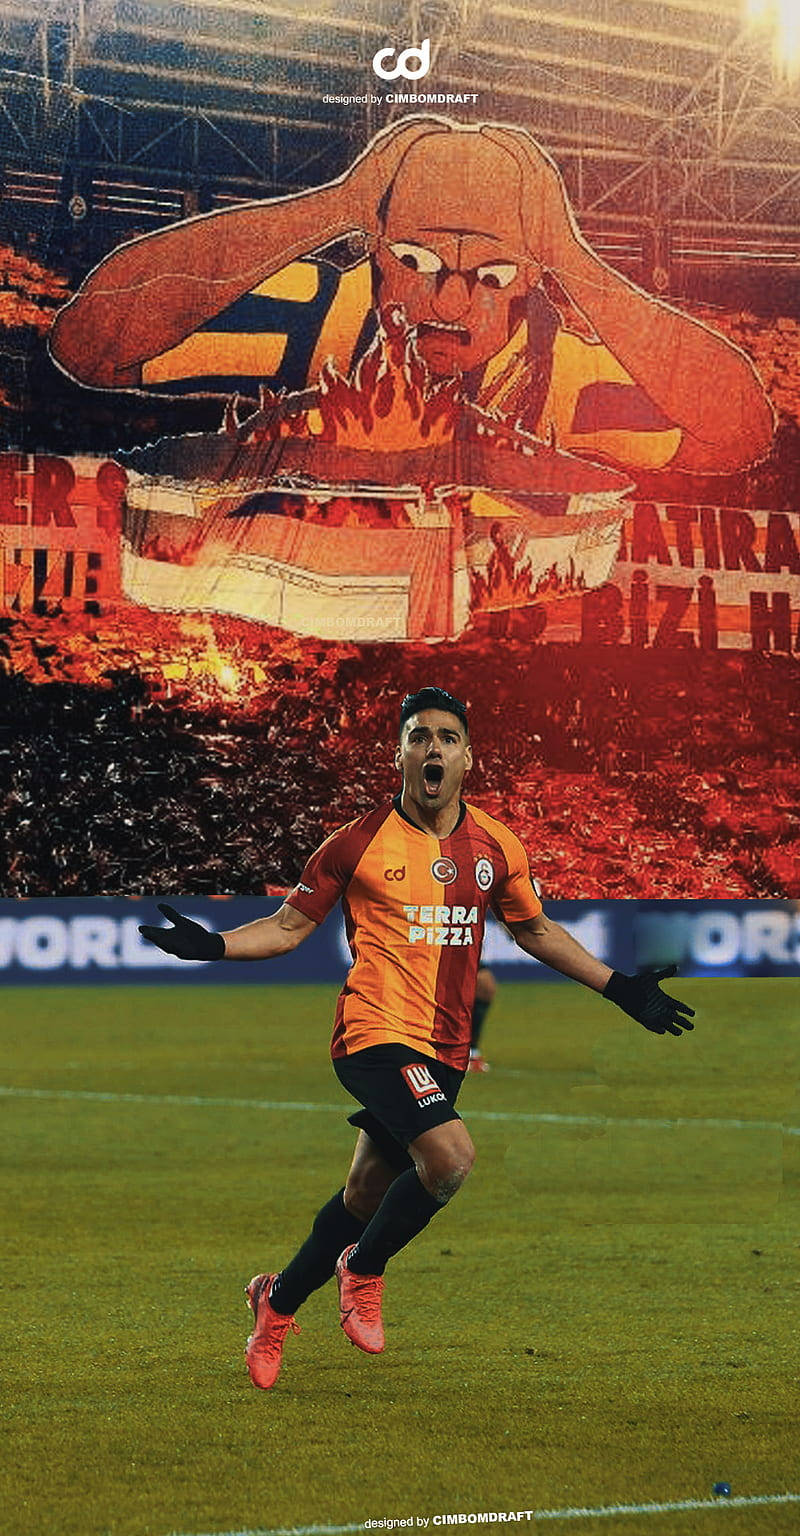 Galatasarayfalcao Feiert Wallpaper